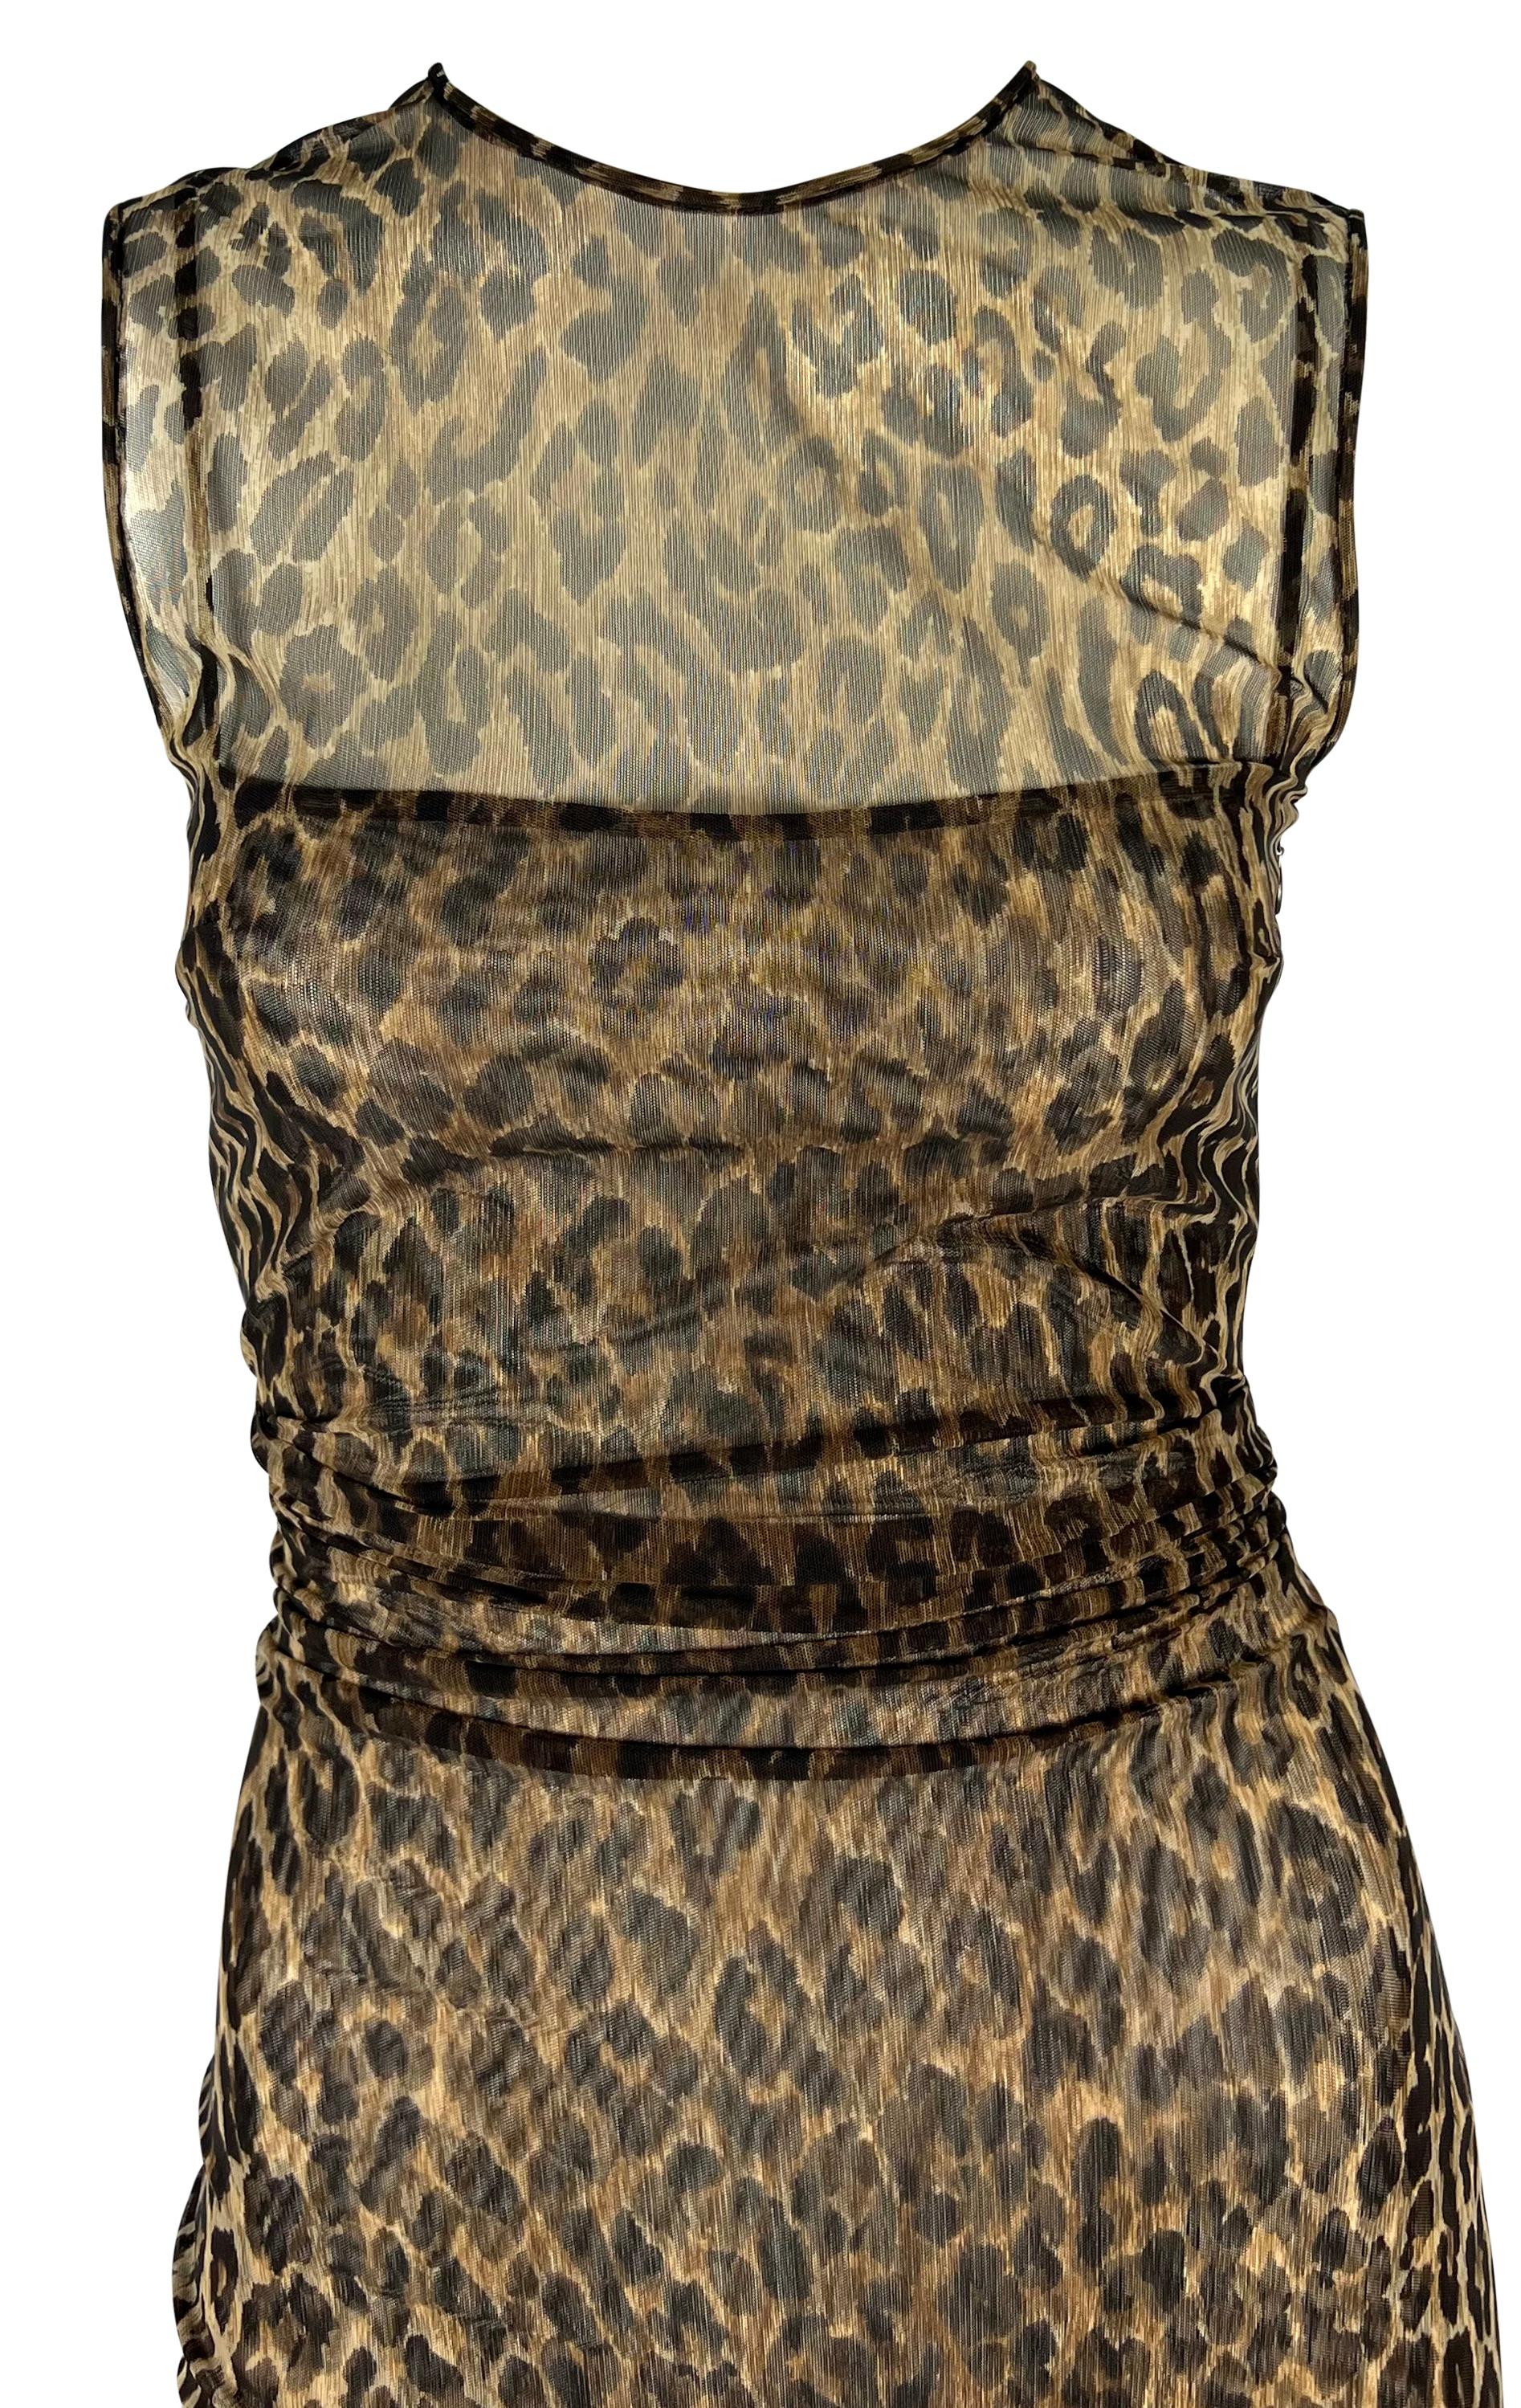 Datant de la fin des années 1990, cette robe transparente à imprimé guépard Dolce & Gabbana colle au corps. La robe en maille extensible est recouverte d'un imprimé guépard audacieux et comporte deux couches : un slip à l'intérieur et un modèle sans